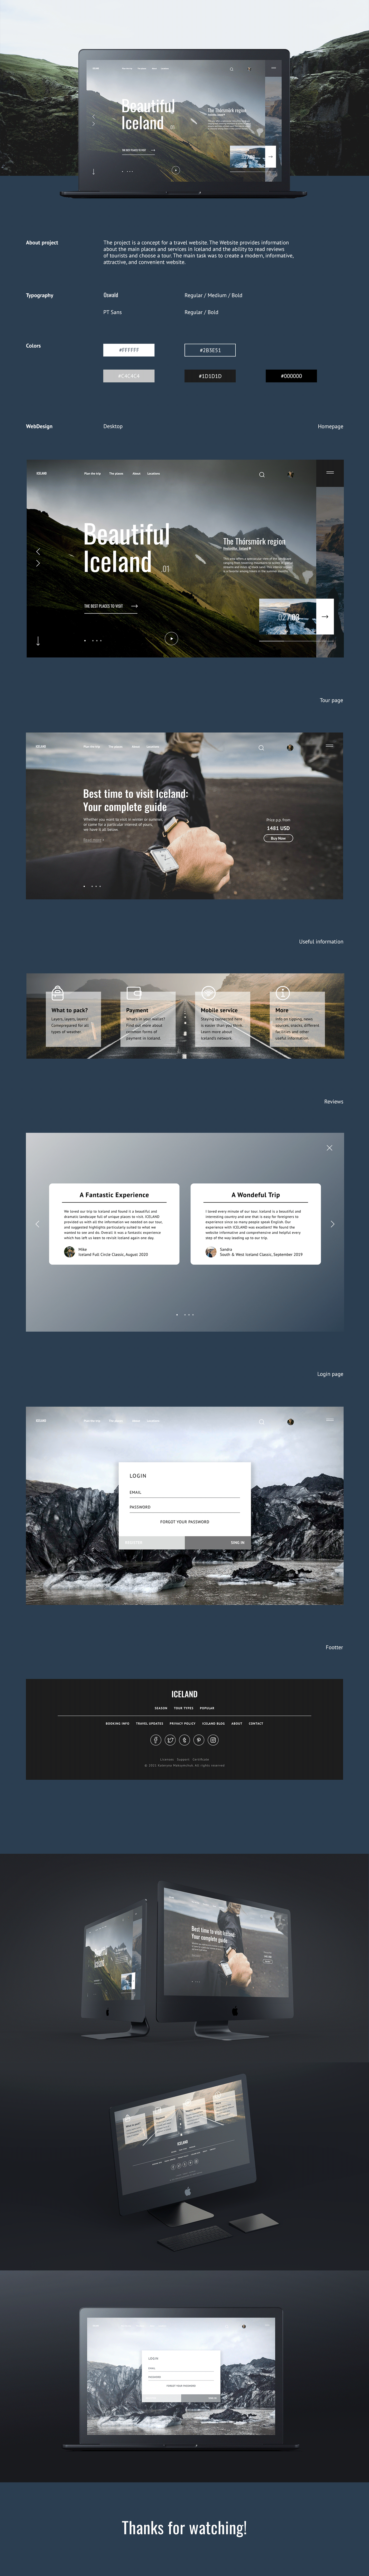 desktop Figma prototype site ui design UI/UX user interface ux Web Webdesign